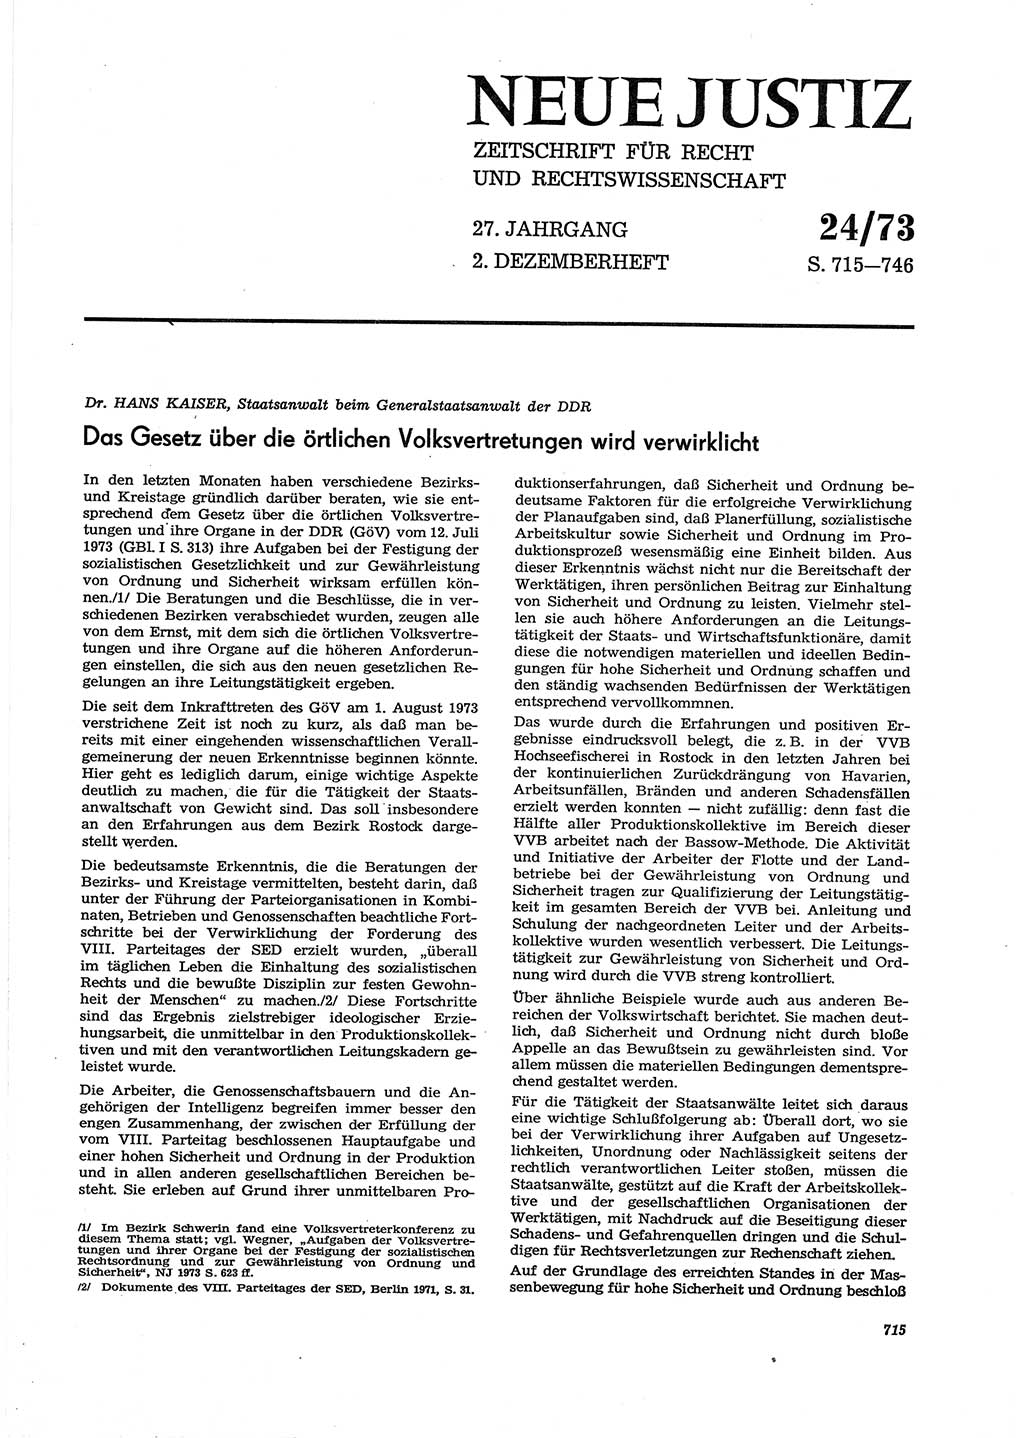 Neue Justiz (NJ), Zeitschrift für Recht und Rechtswissenschaft [Deutsche Demokratische Republik (DDR)], 27. Jahrgang 1973, Seite 715 (NJ DDR 1973, S. 715)